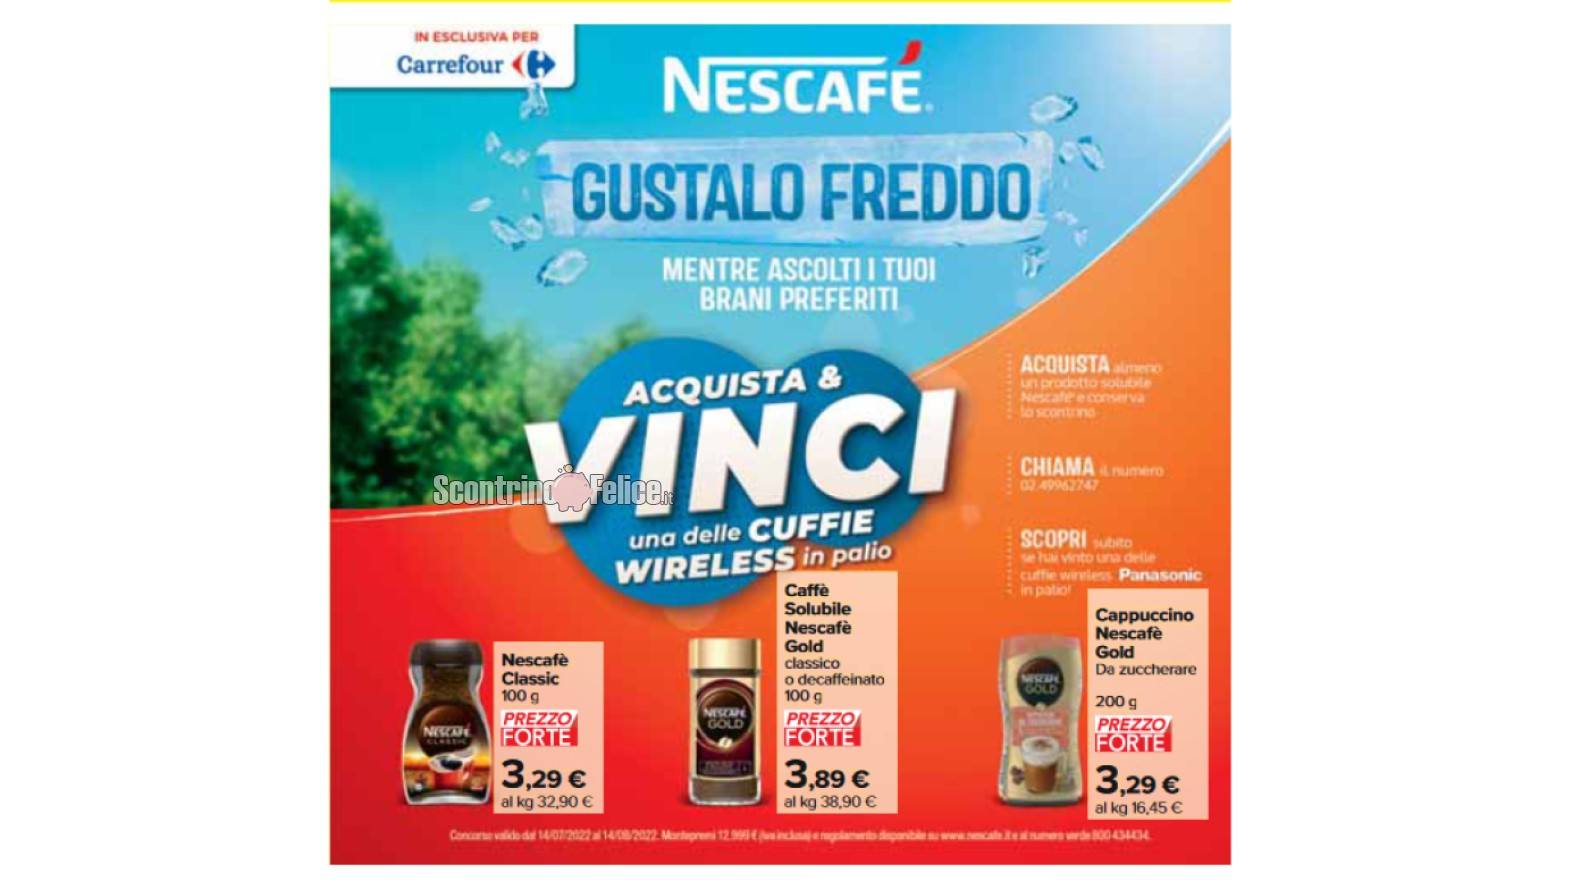 Concorso Nescafé "Gustalo Freddo" da Carrefour: acquista e vinci una delle cuffie wireless Panasonic in palio